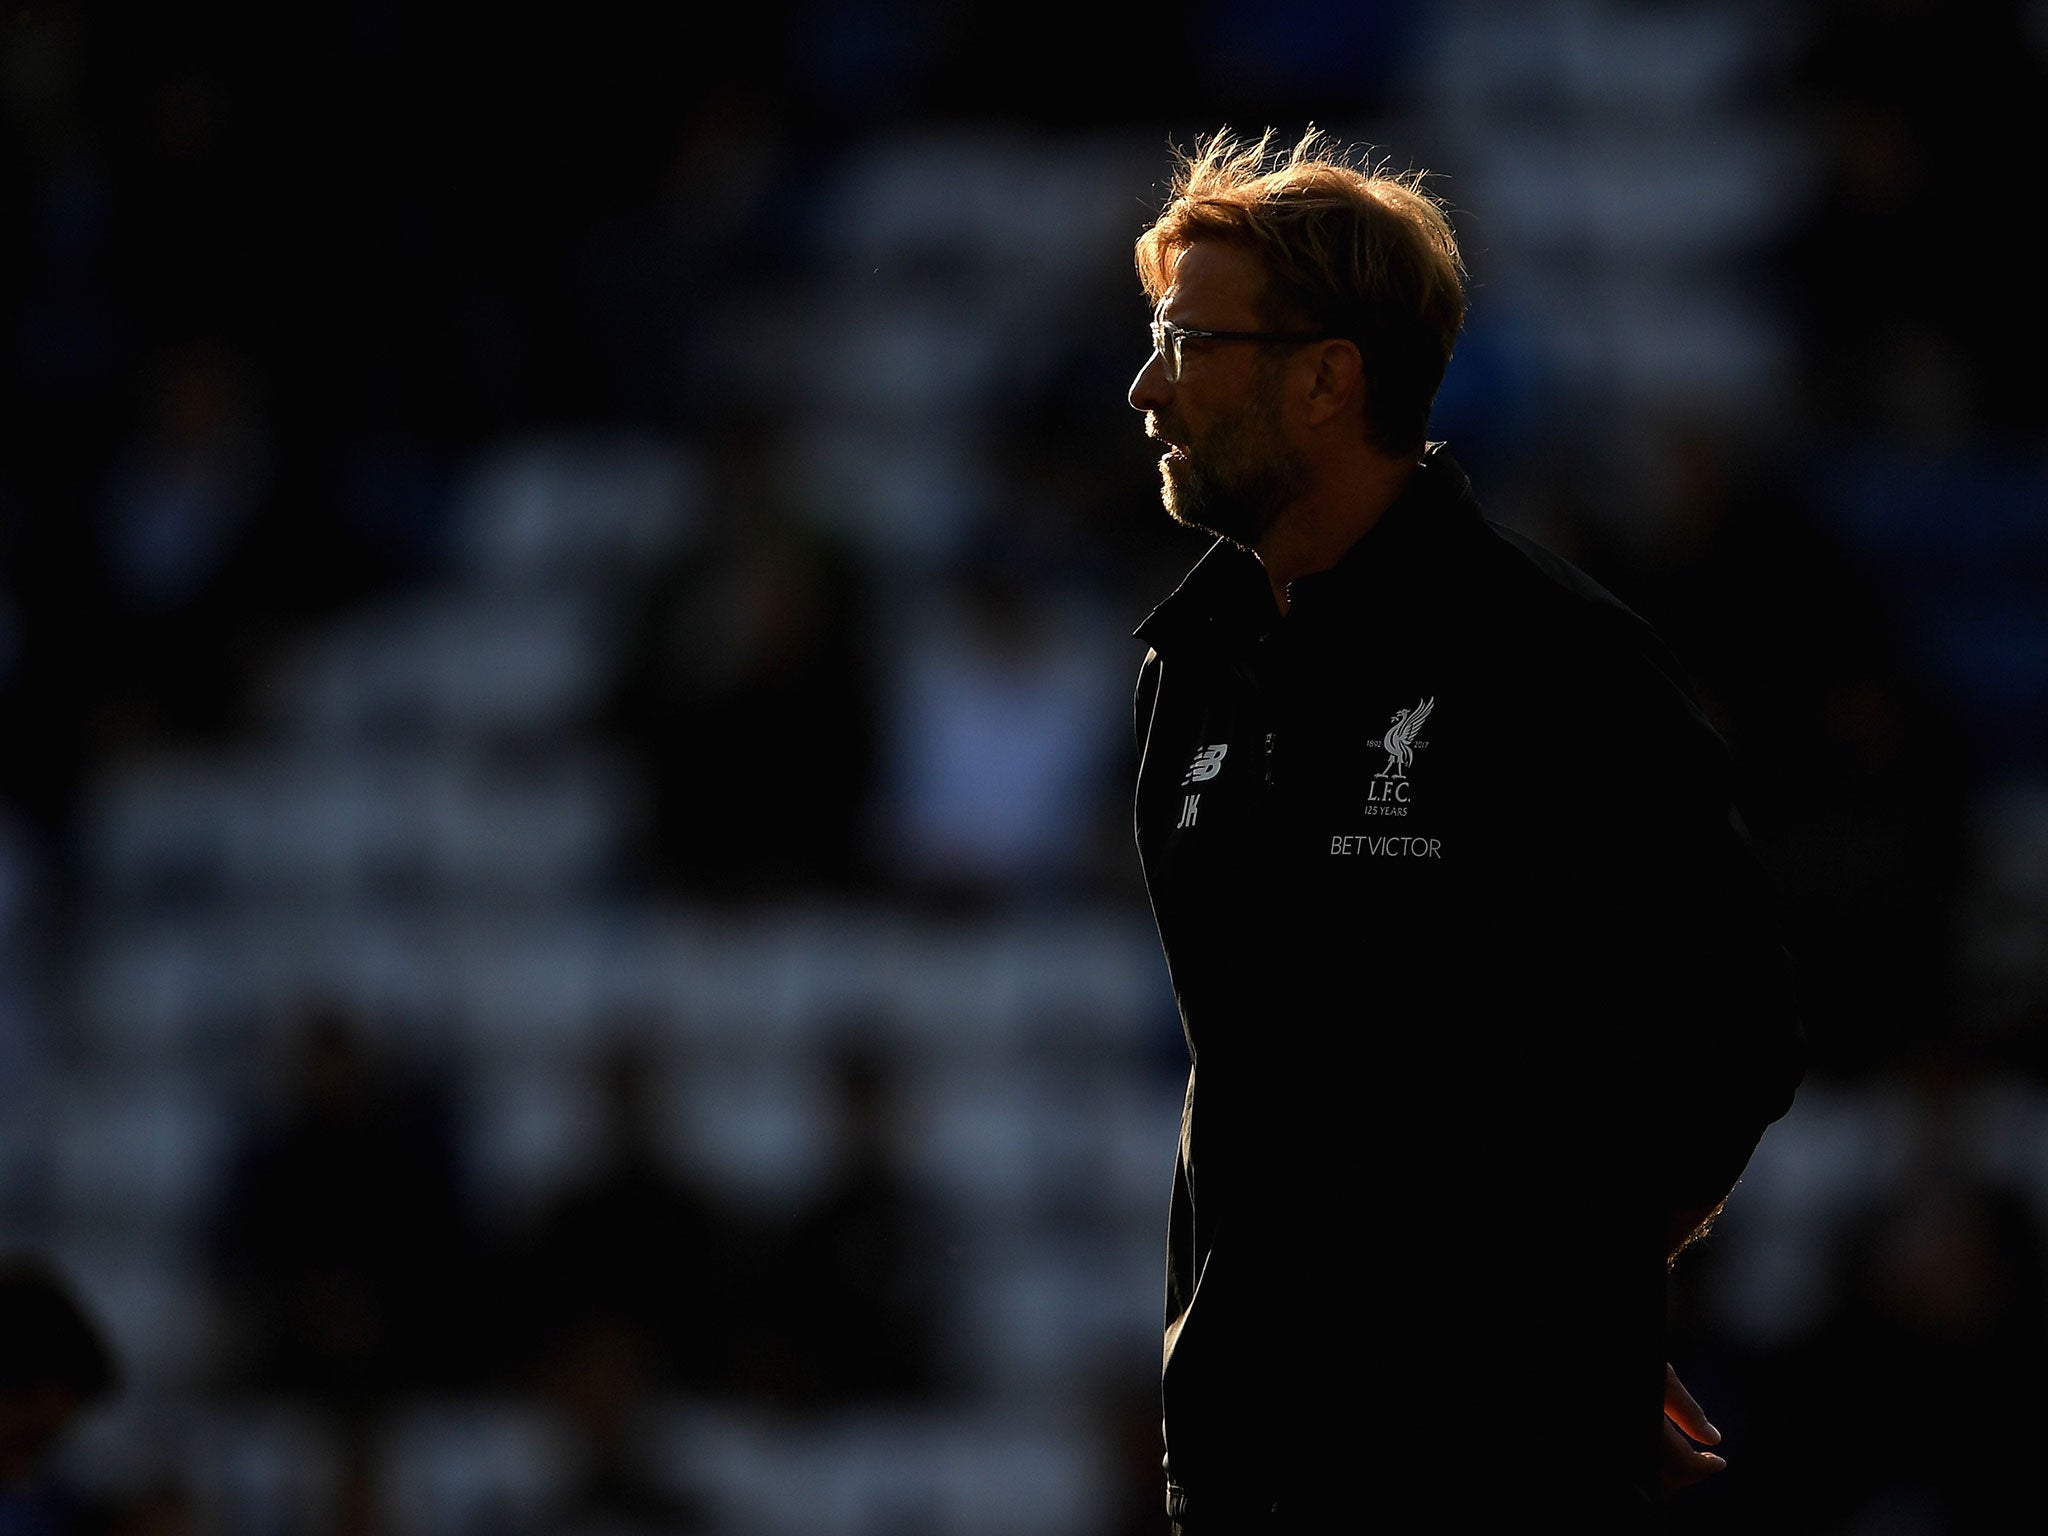 Jurgen Klopp is finding himself under increasing pressure at Liverpool